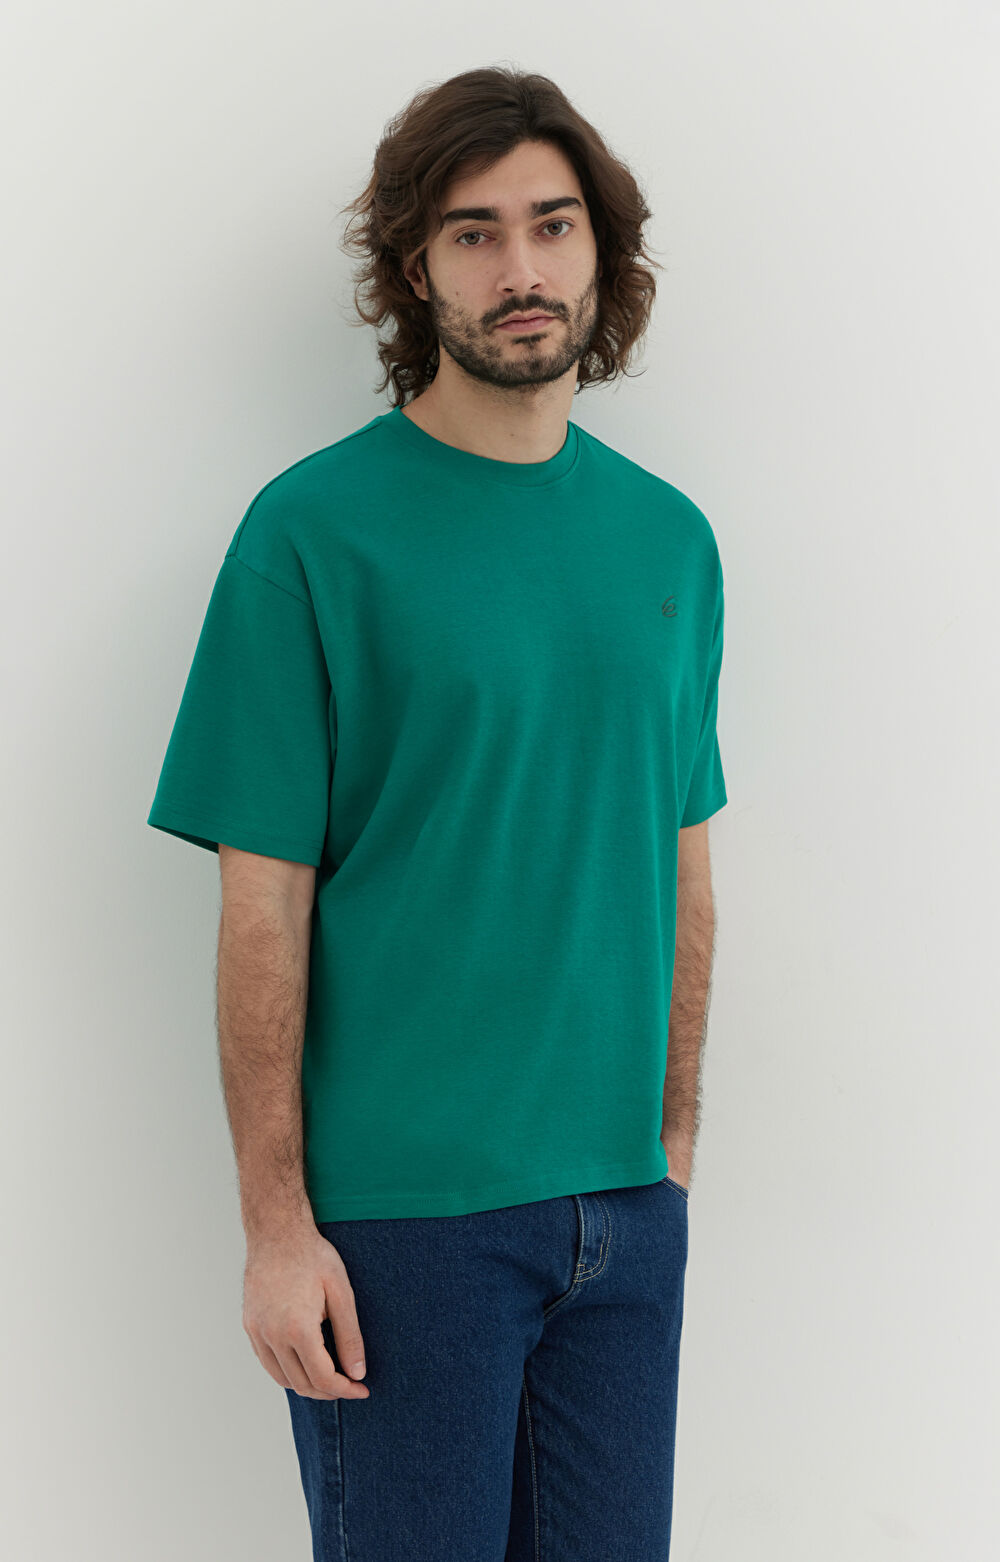 T-shirt z bawełny organicznej o luźnej sylwetce